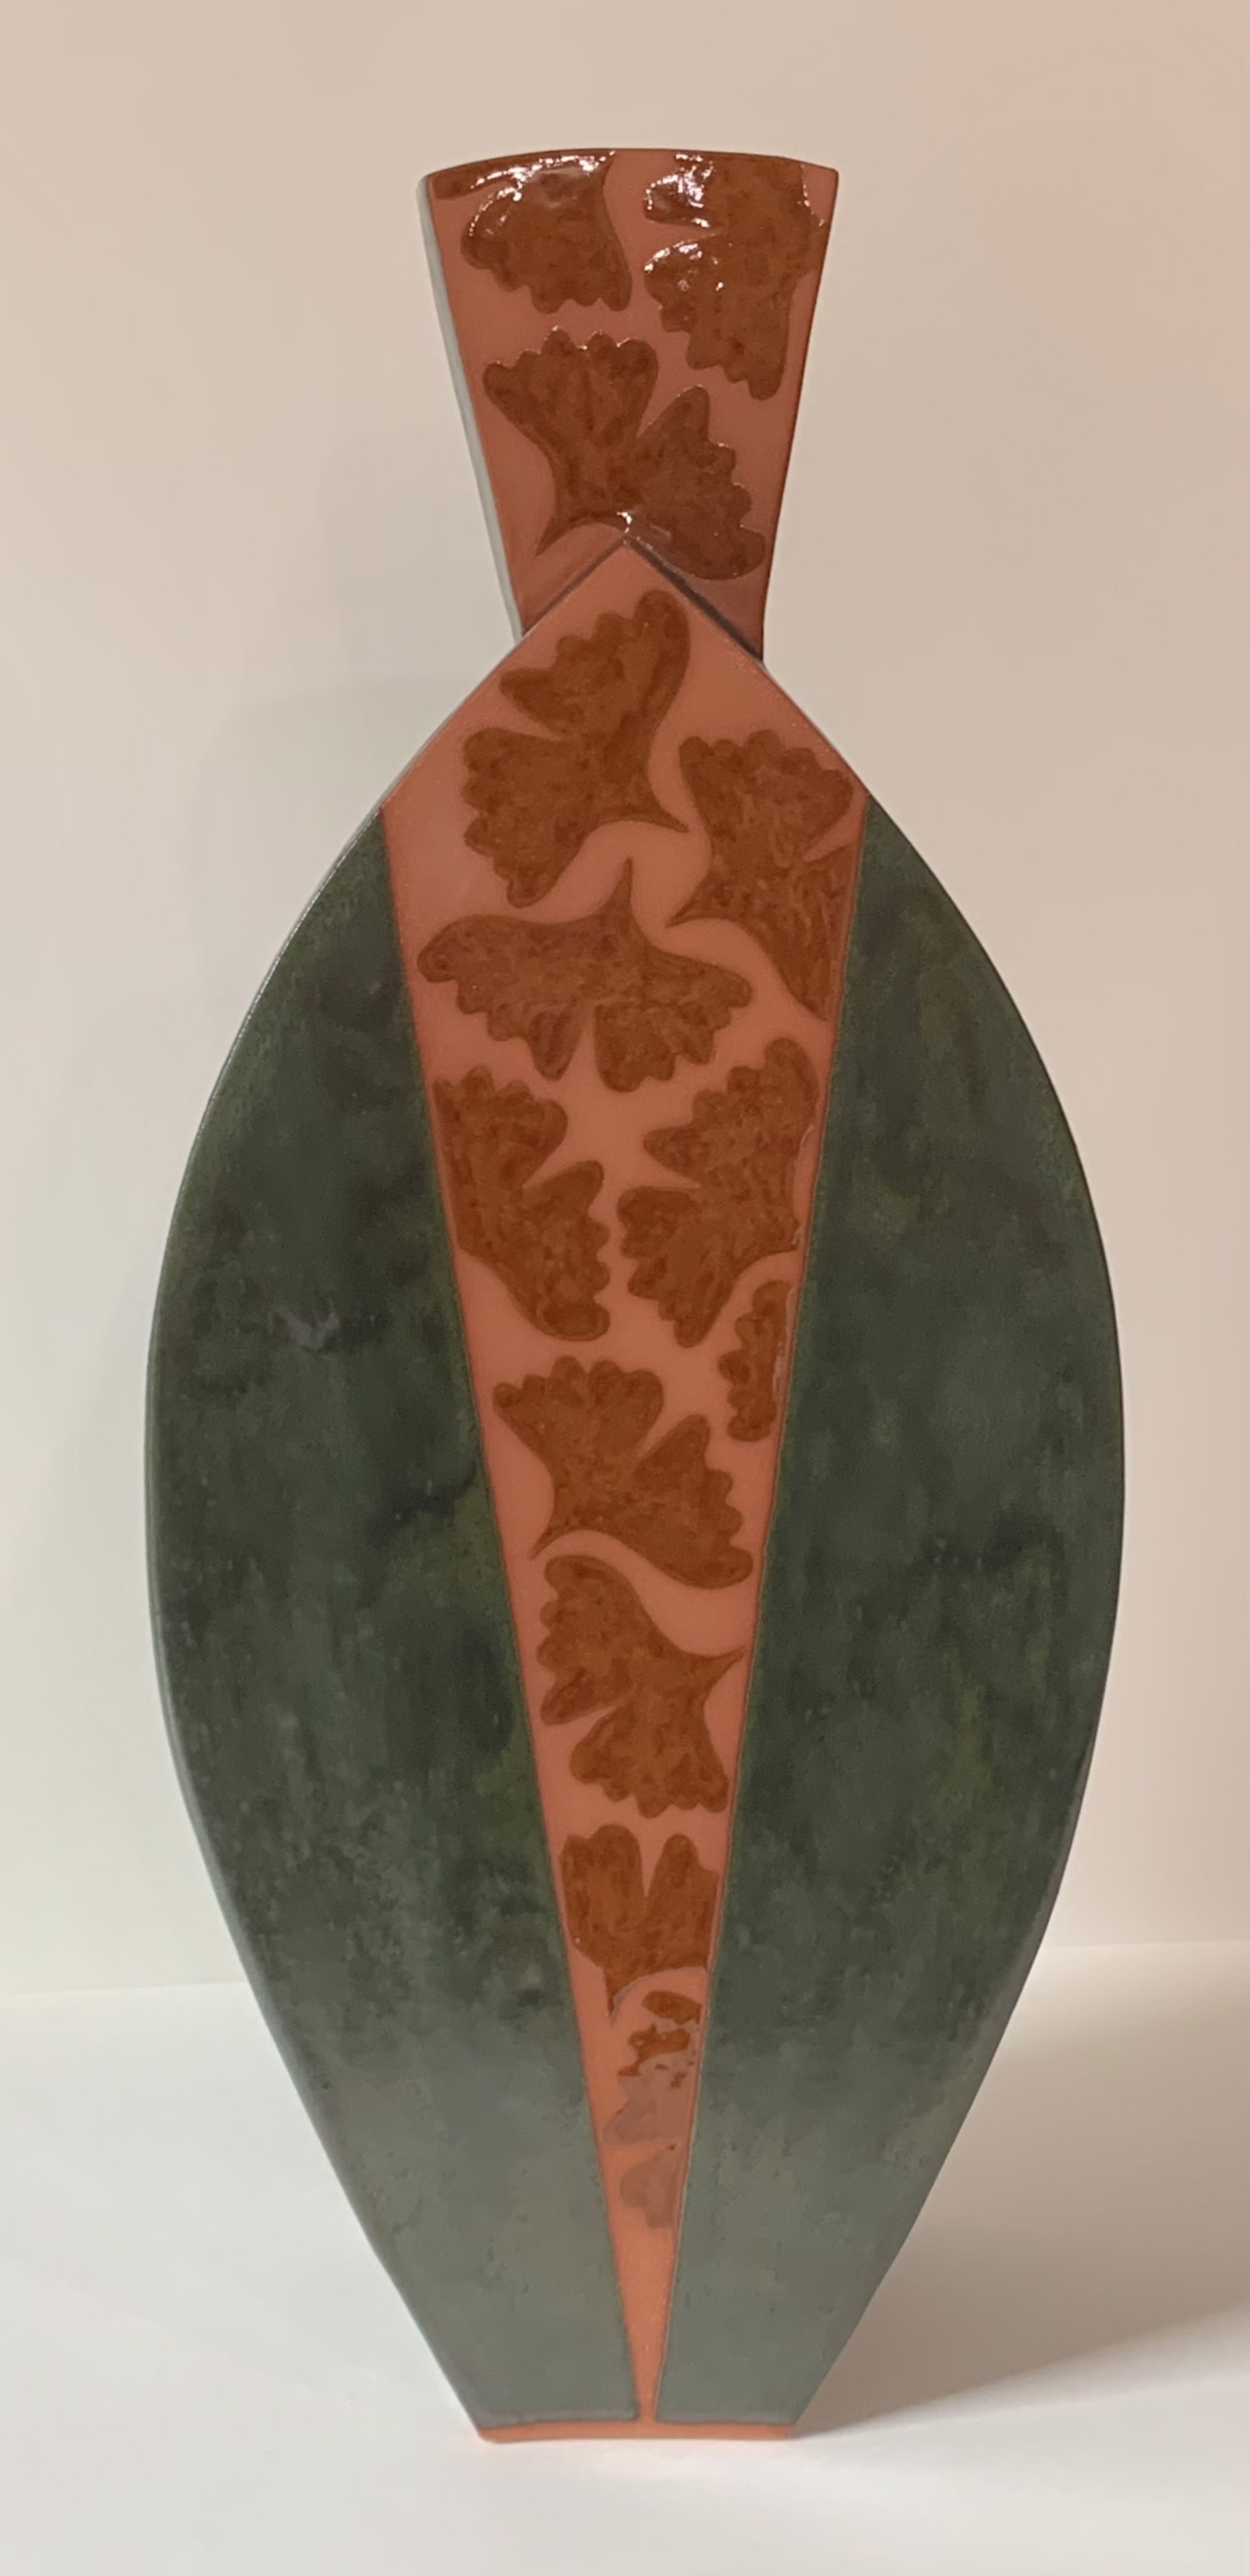 Vase by Glenda Guion